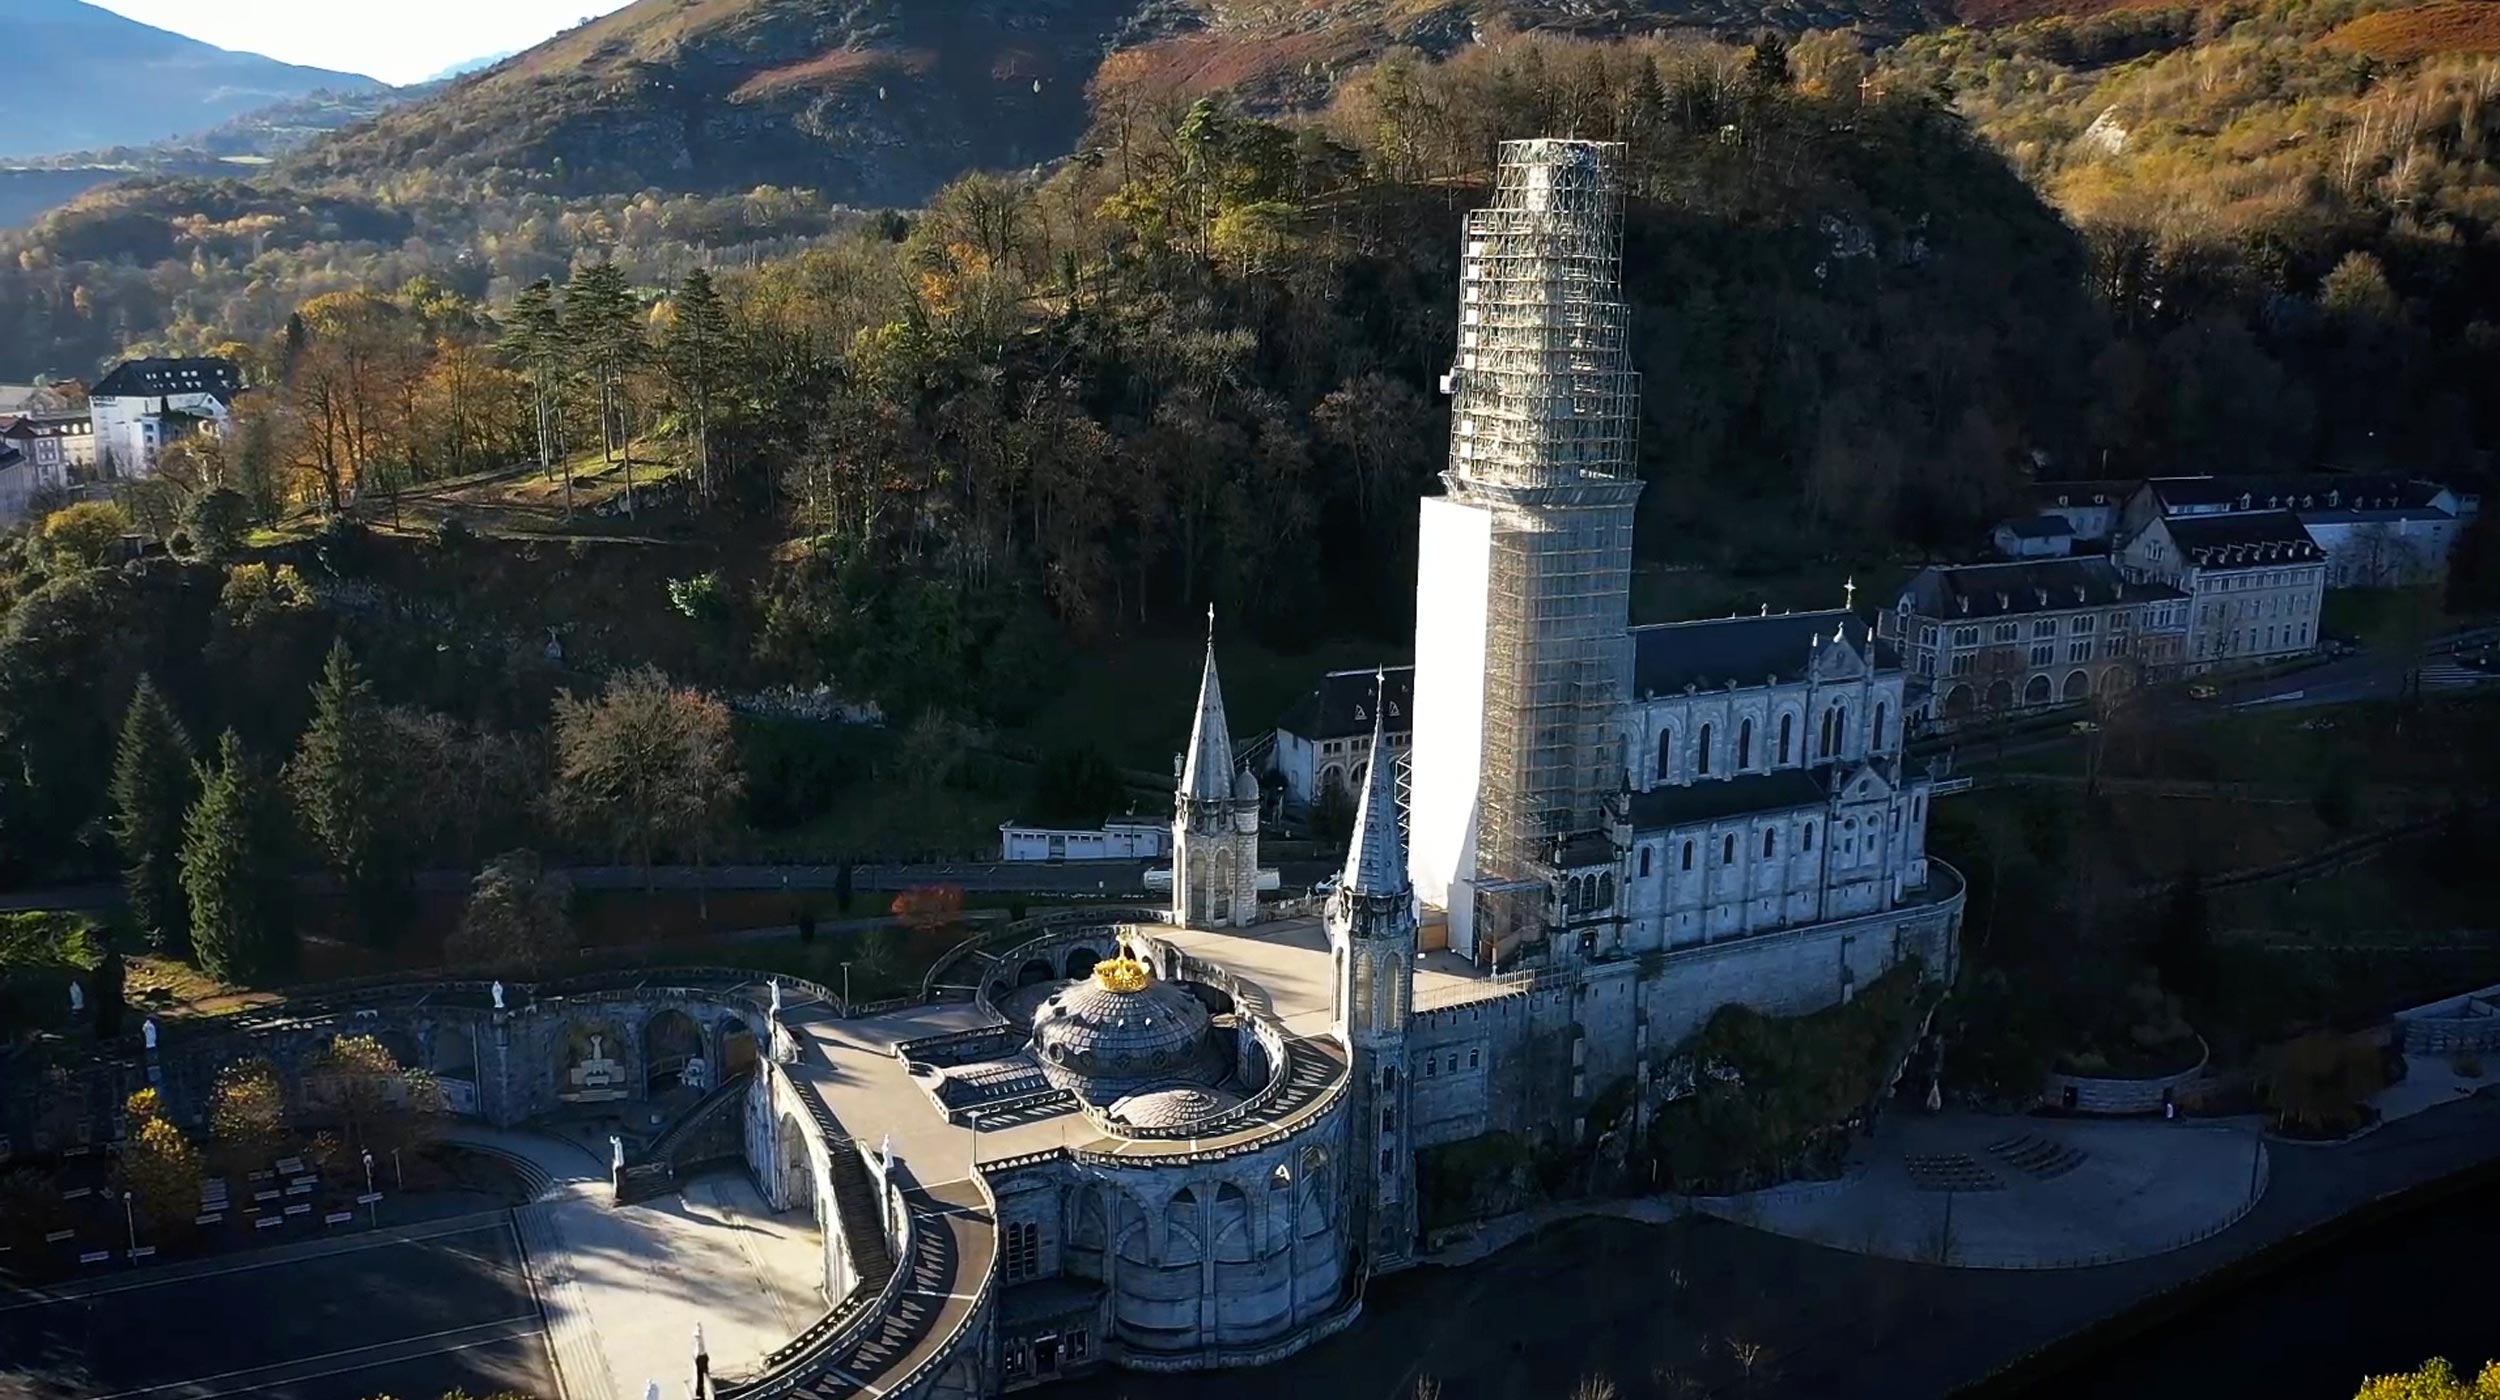 Trabajos de restauración del campanario de la Basílica de la Inmaculada Concepción, conocido como Santuario de Nuestra Señora de Lourdes, Francia.